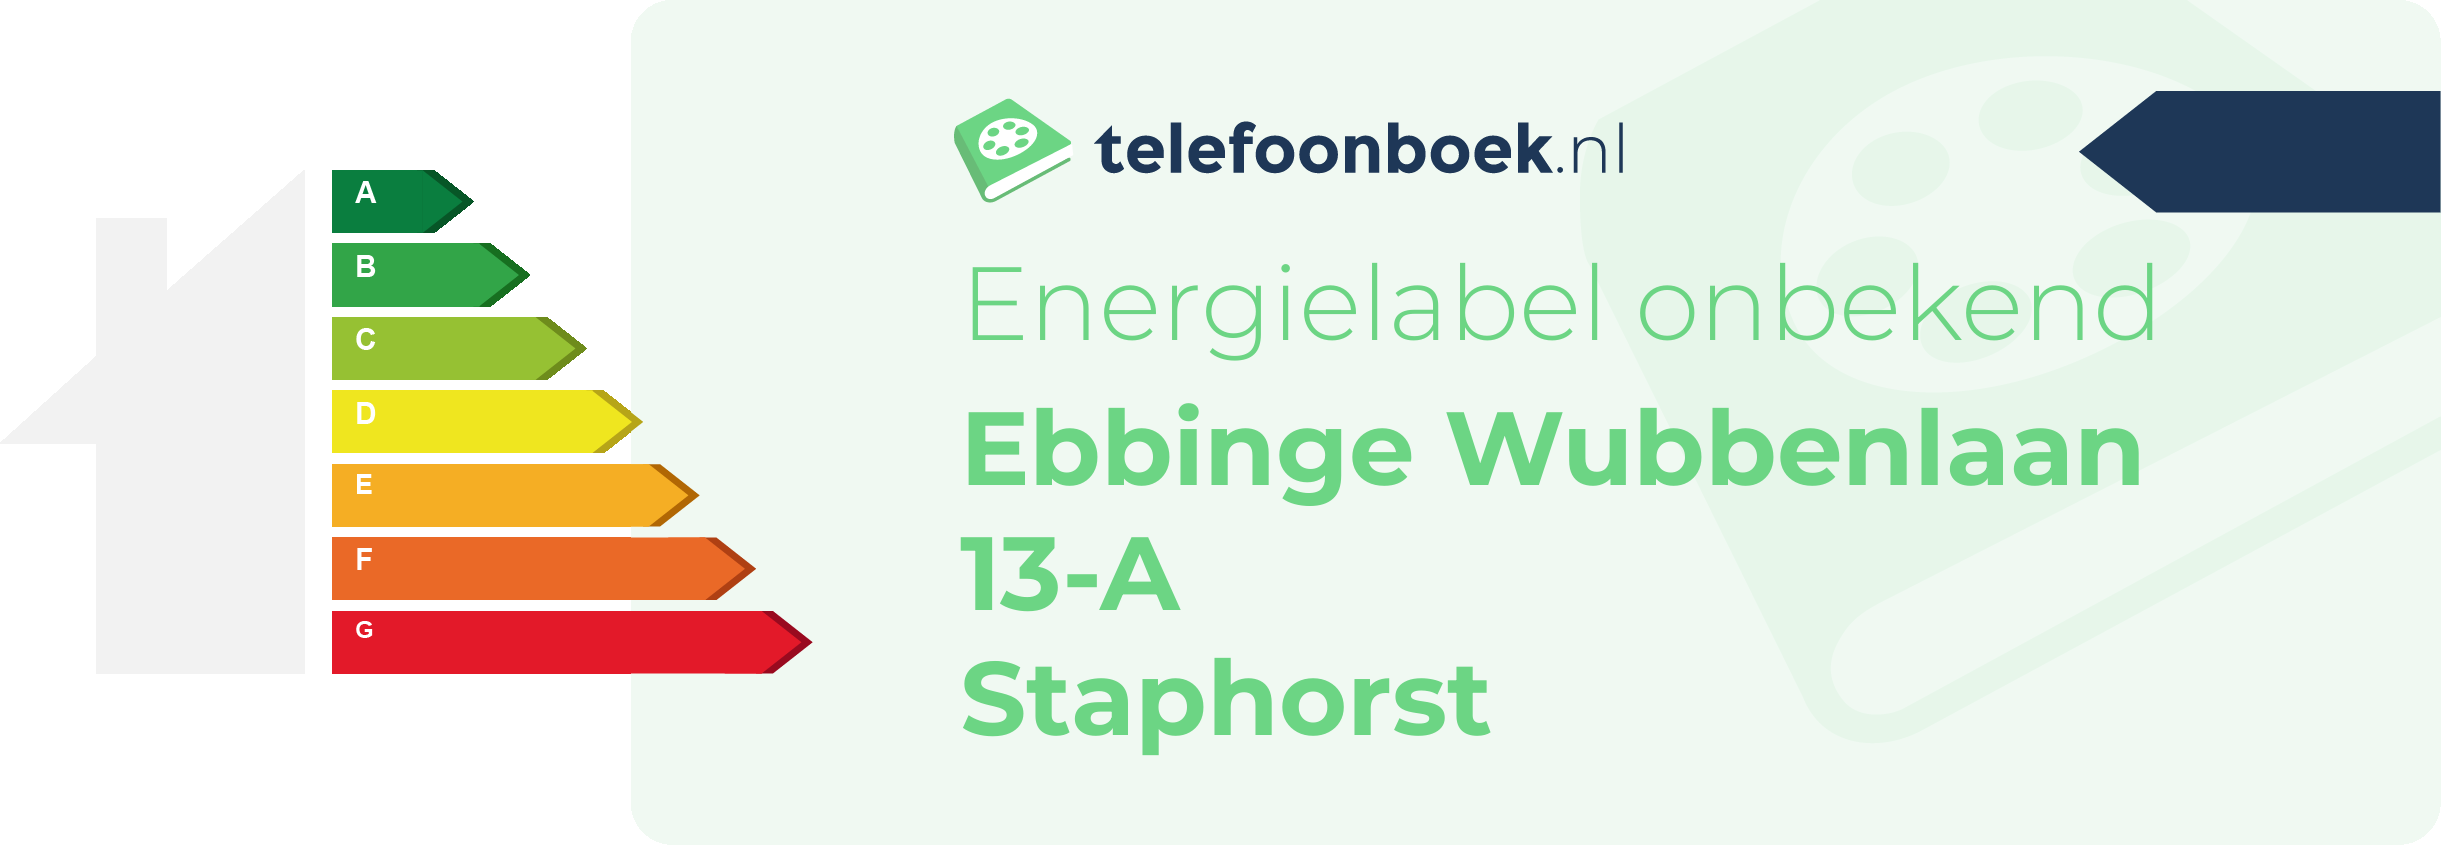 Energielabel Ebbinge Wubbenlaan 13-A Staphorst